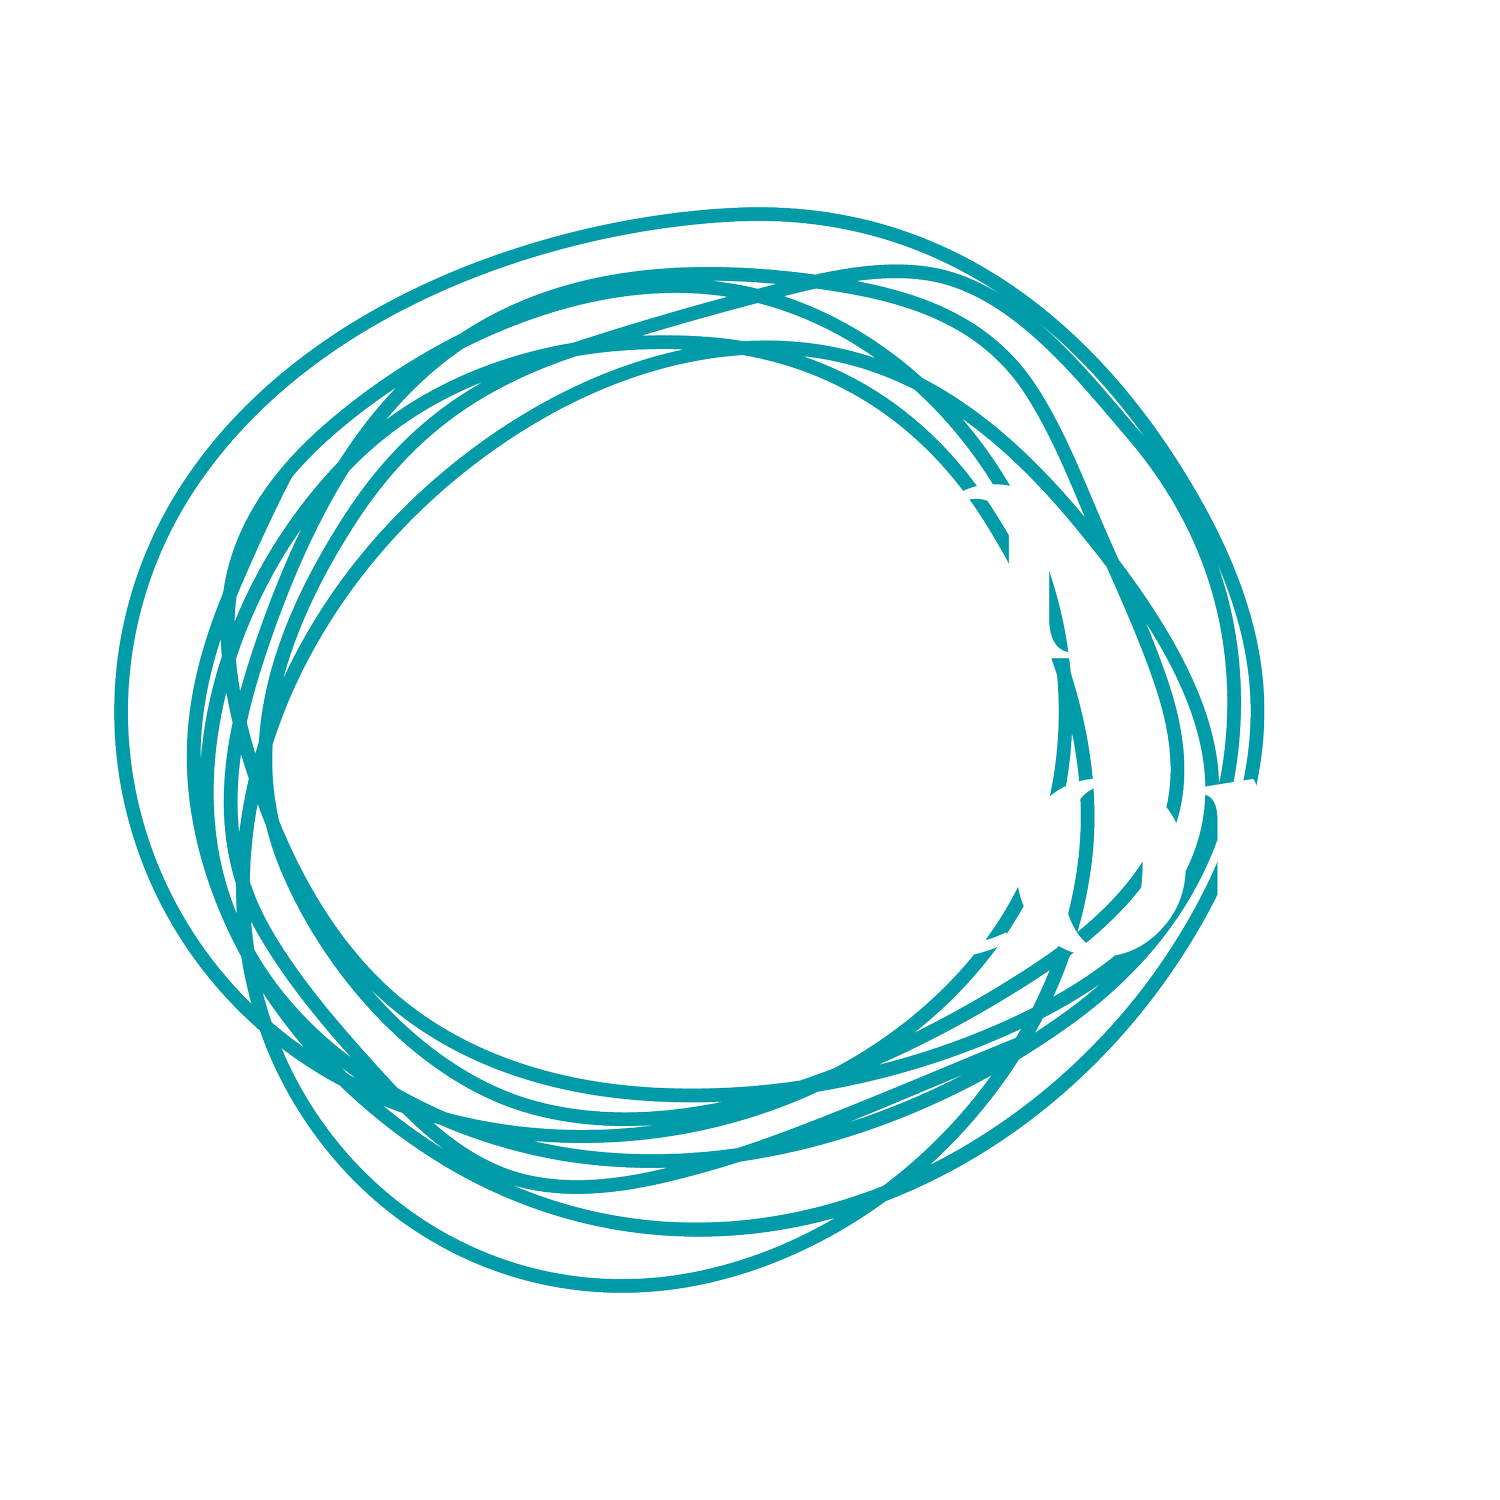 Jon Skelton